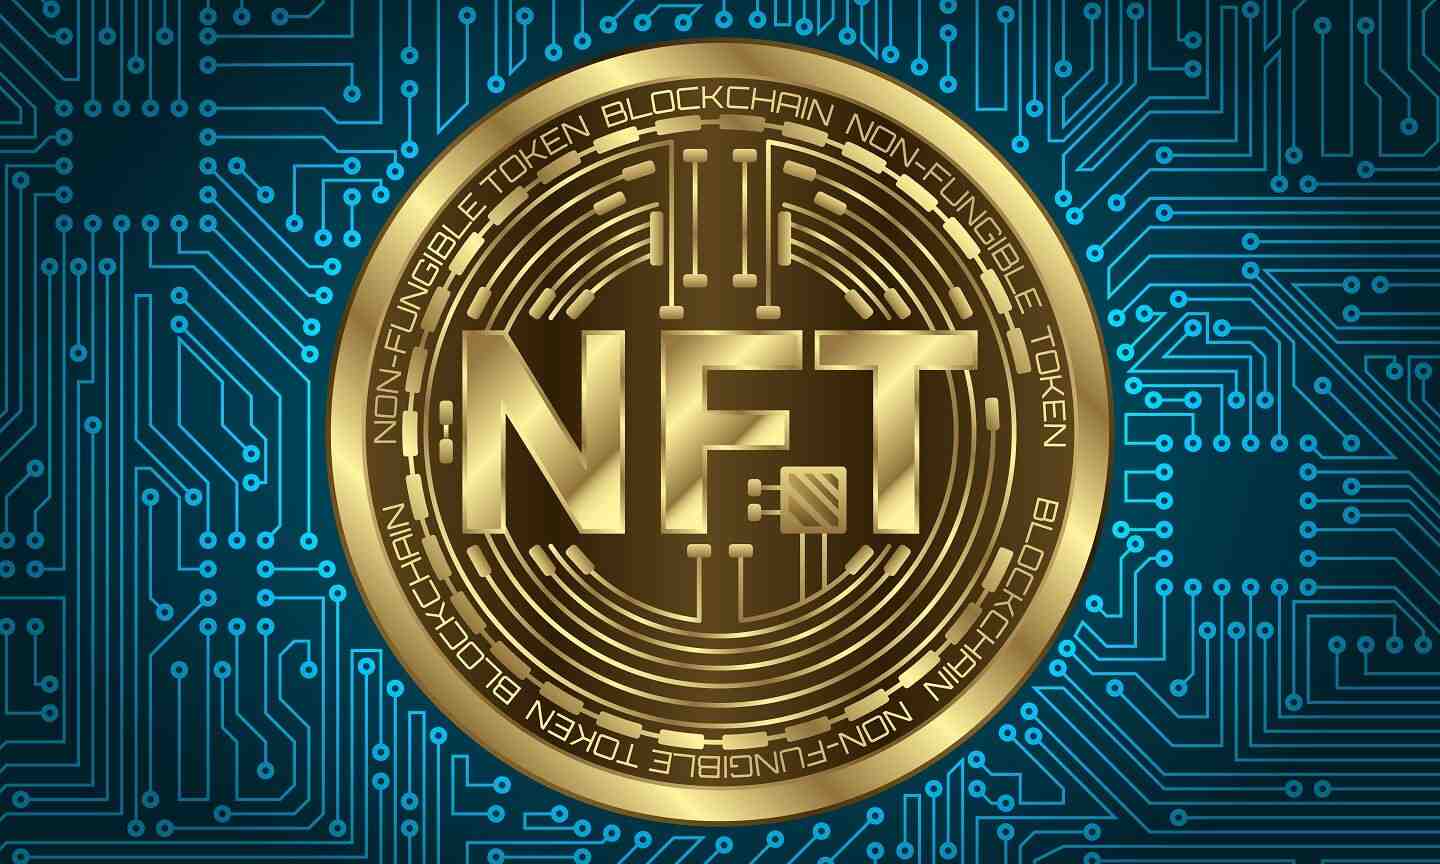 Quel est l'avenir des NFT selon vous ?